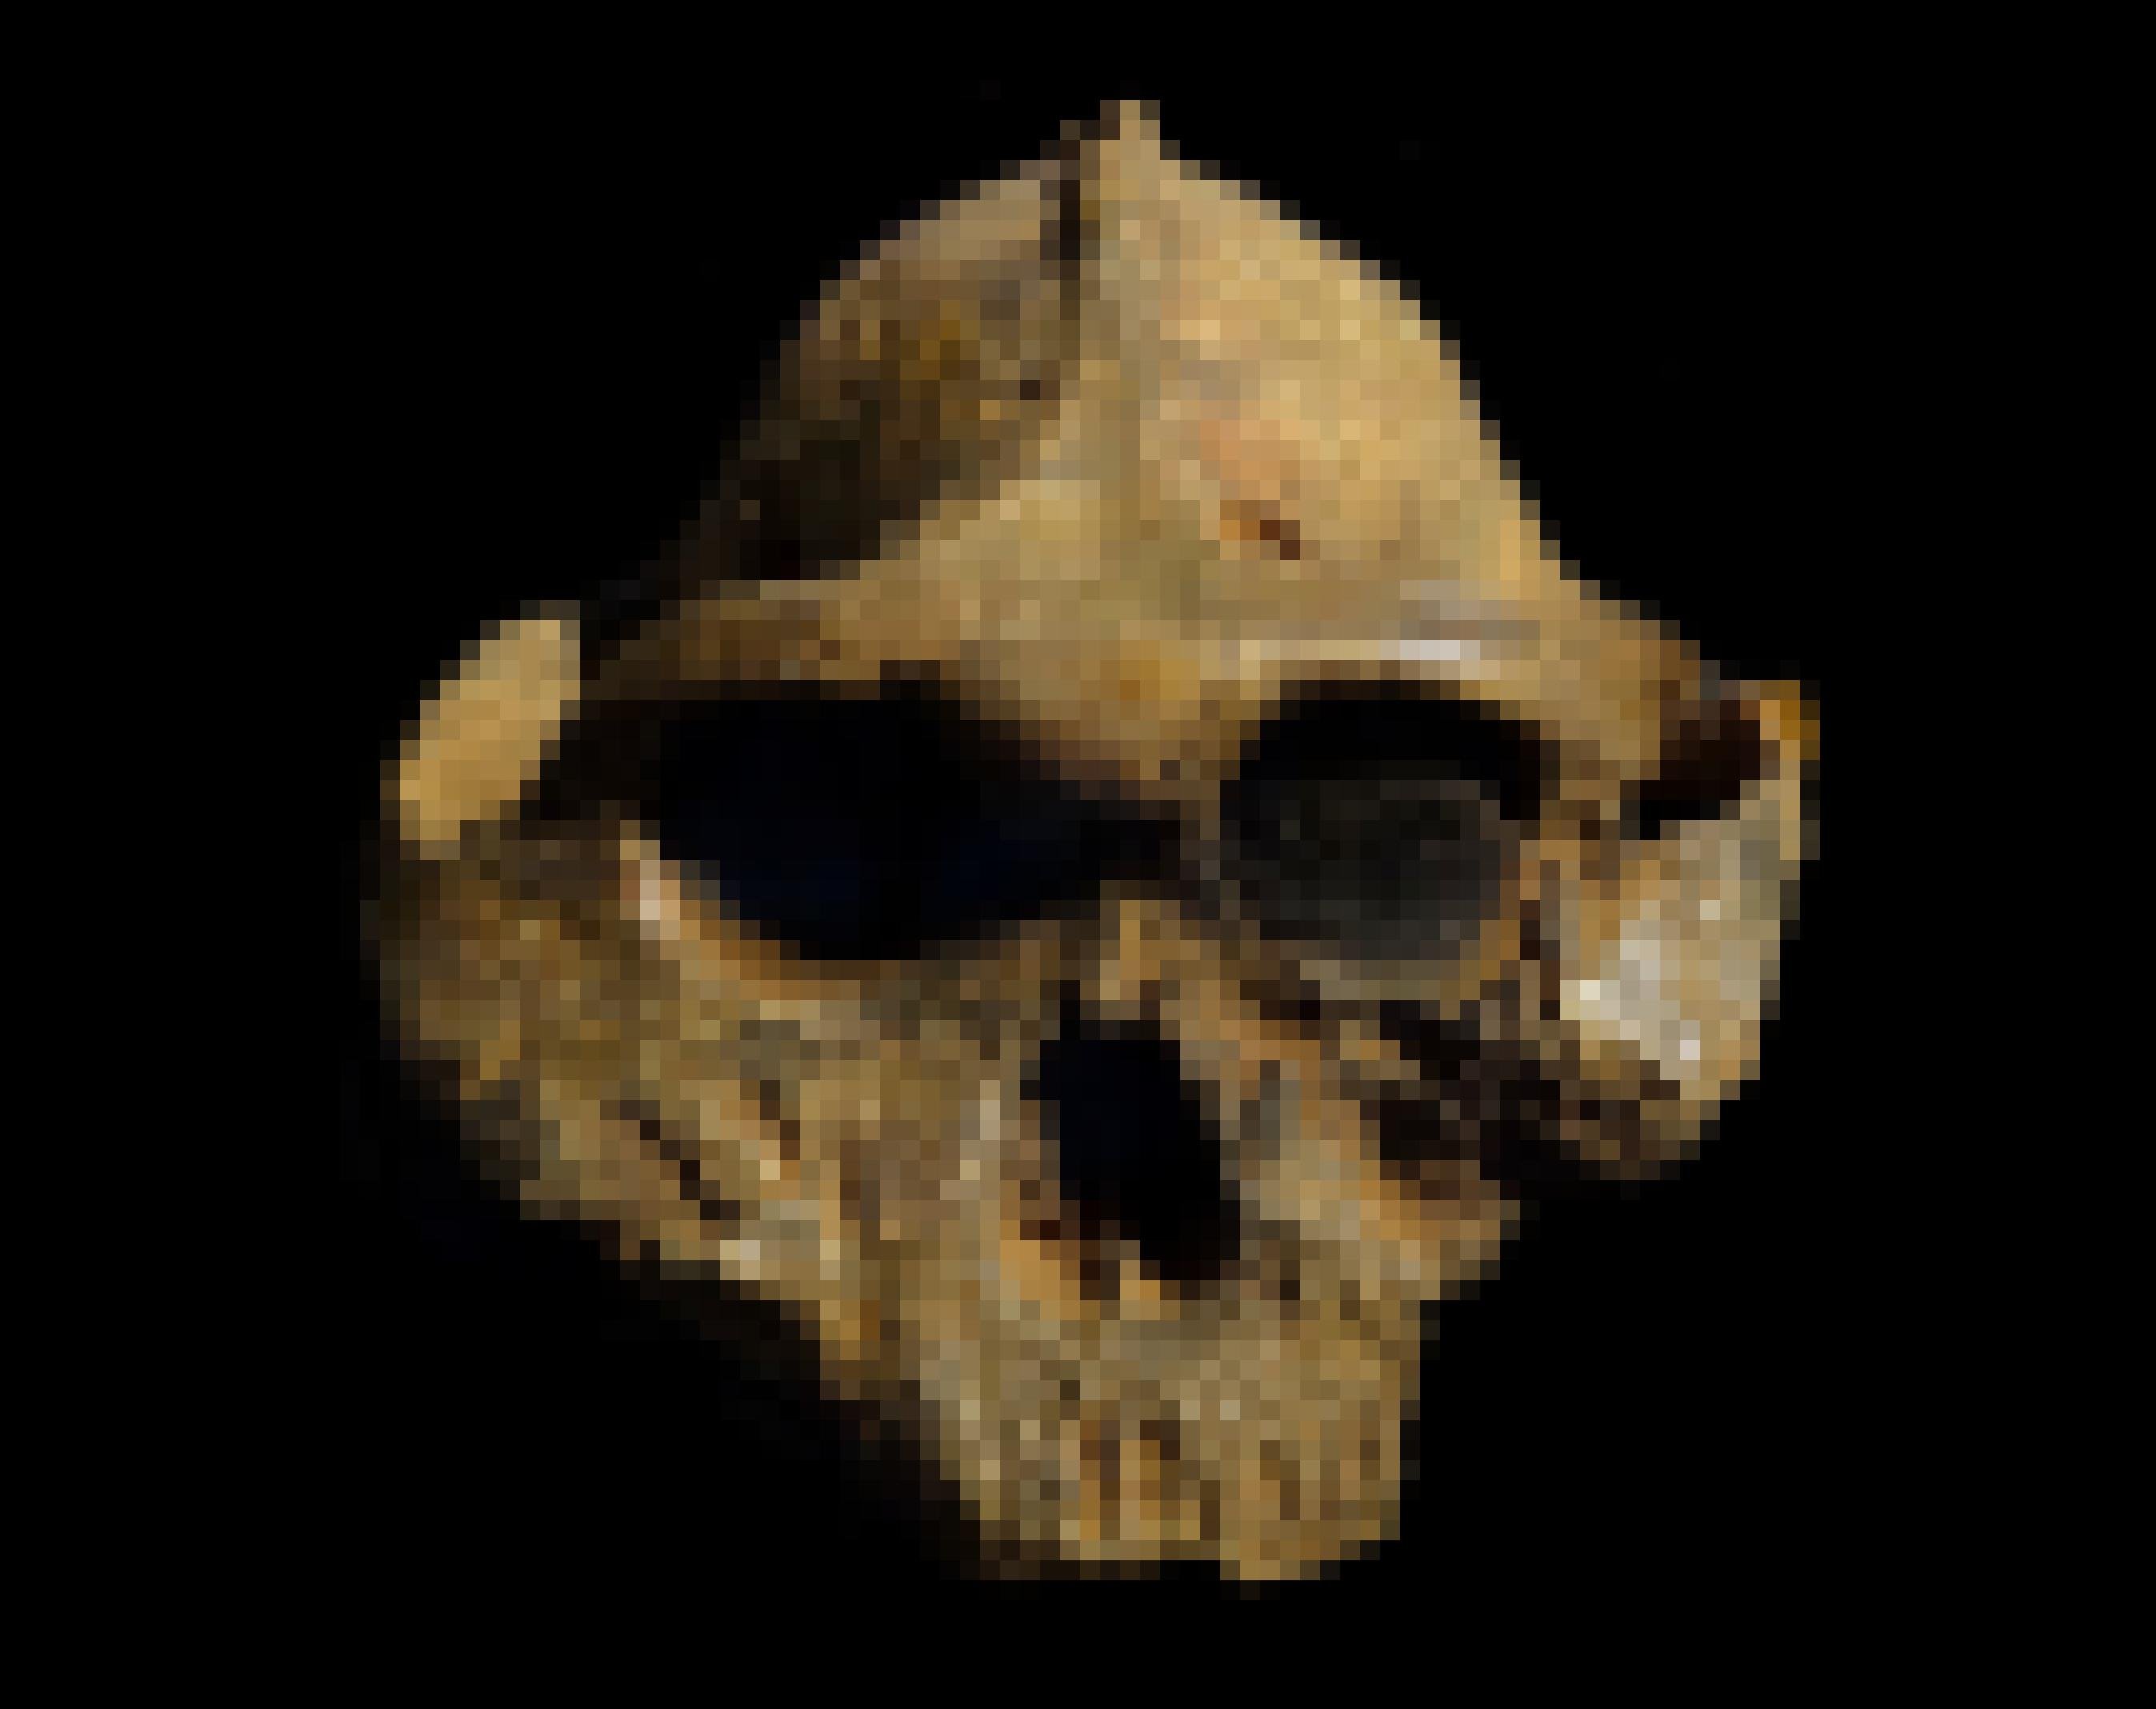 Am fossilen Schädel des Nussknackermenschen Paranthropus boisei ist oben, auf dem Scheitel, eine knöcherne Erhebung zu erkennen. An diesem Knochenkamm setzten einst die stark ausgeprägten Kaumuskeln an.